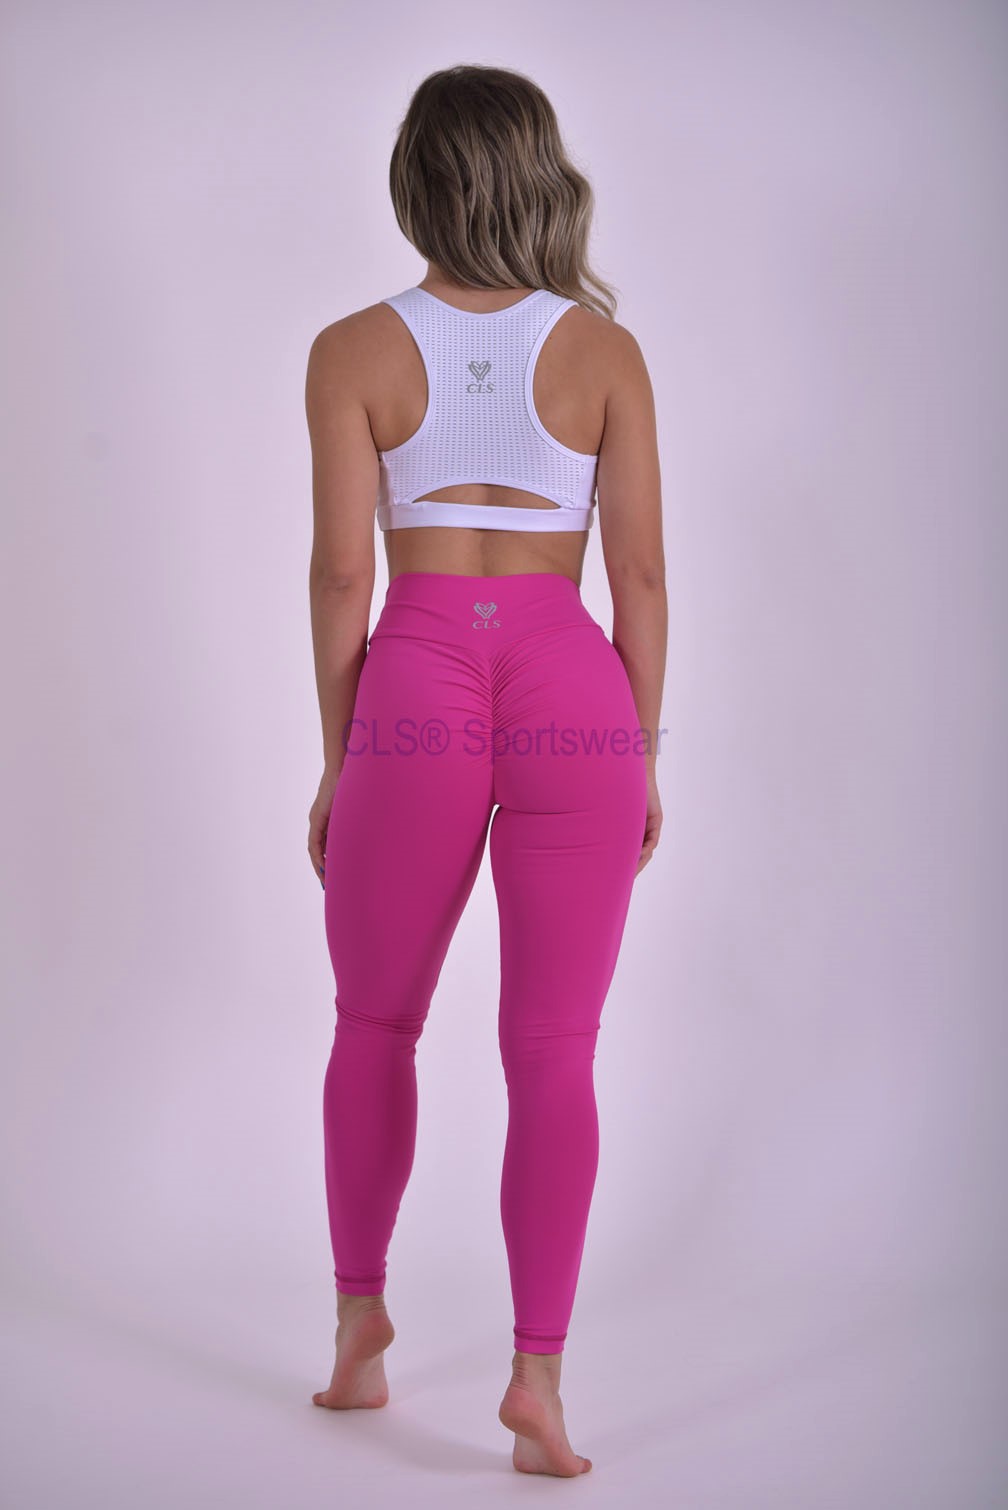 CLS Sportswear review & try on • booty scrunch leggings 